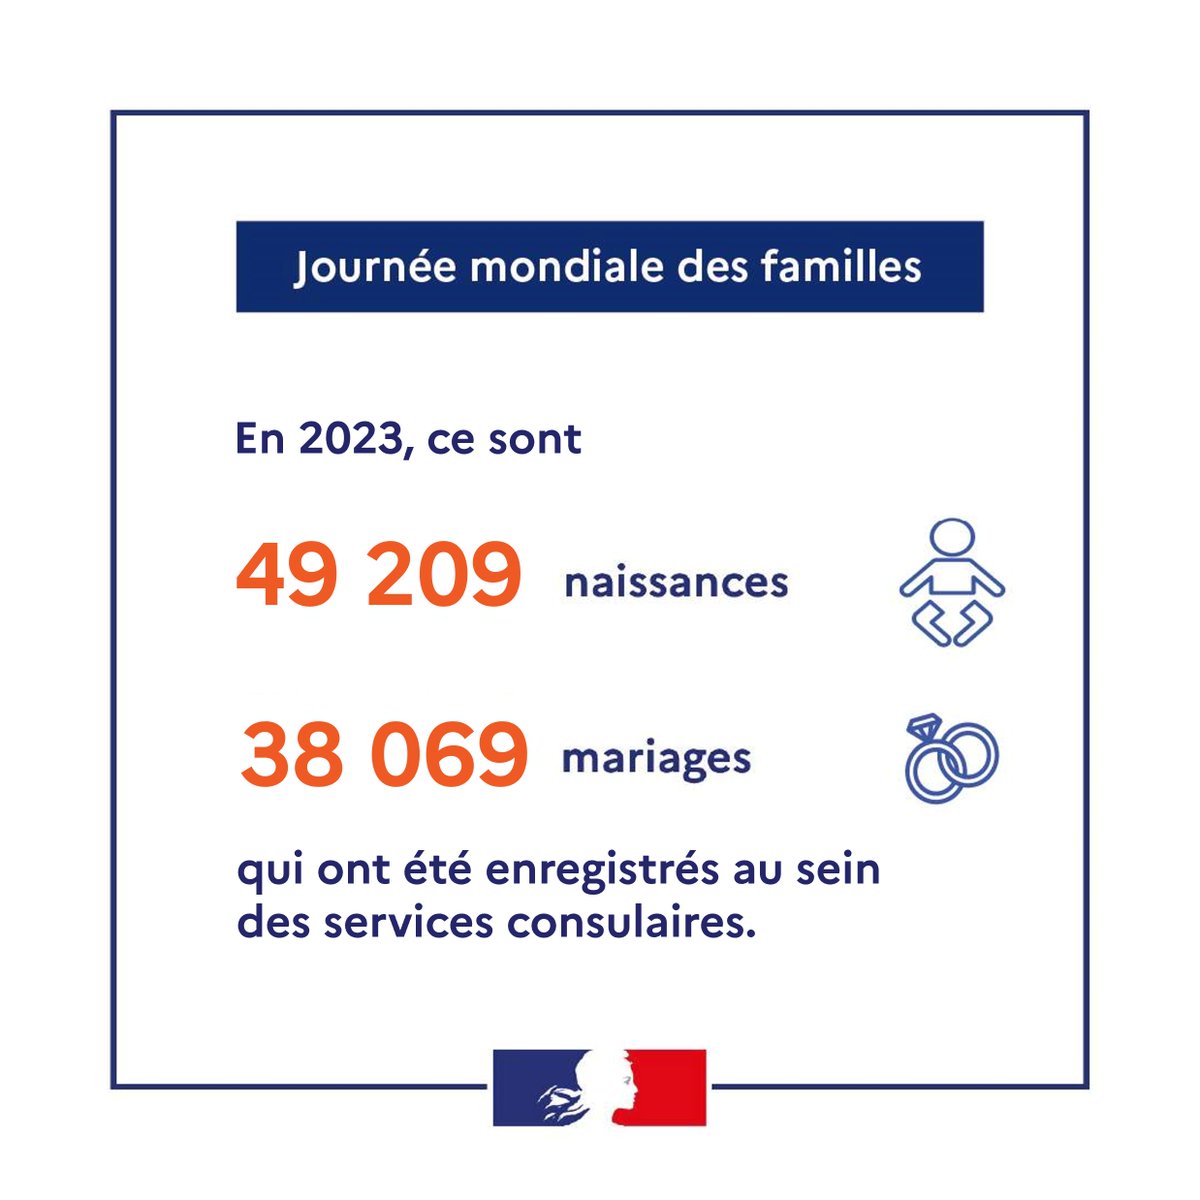 💖 Aujourd'hui, nous célébrons la #JournéeMondialedelaFamille. 
Nos services consulaires sont pleinement mobilisés pour soutenir les Français à l'étranger dans leurs démarches : en 2️⃣0️⃣2️⃣3️⃣, nous avons enregistré 
49 209 naissances et 38 069 mariages. #ServicePublic #EtatCivil